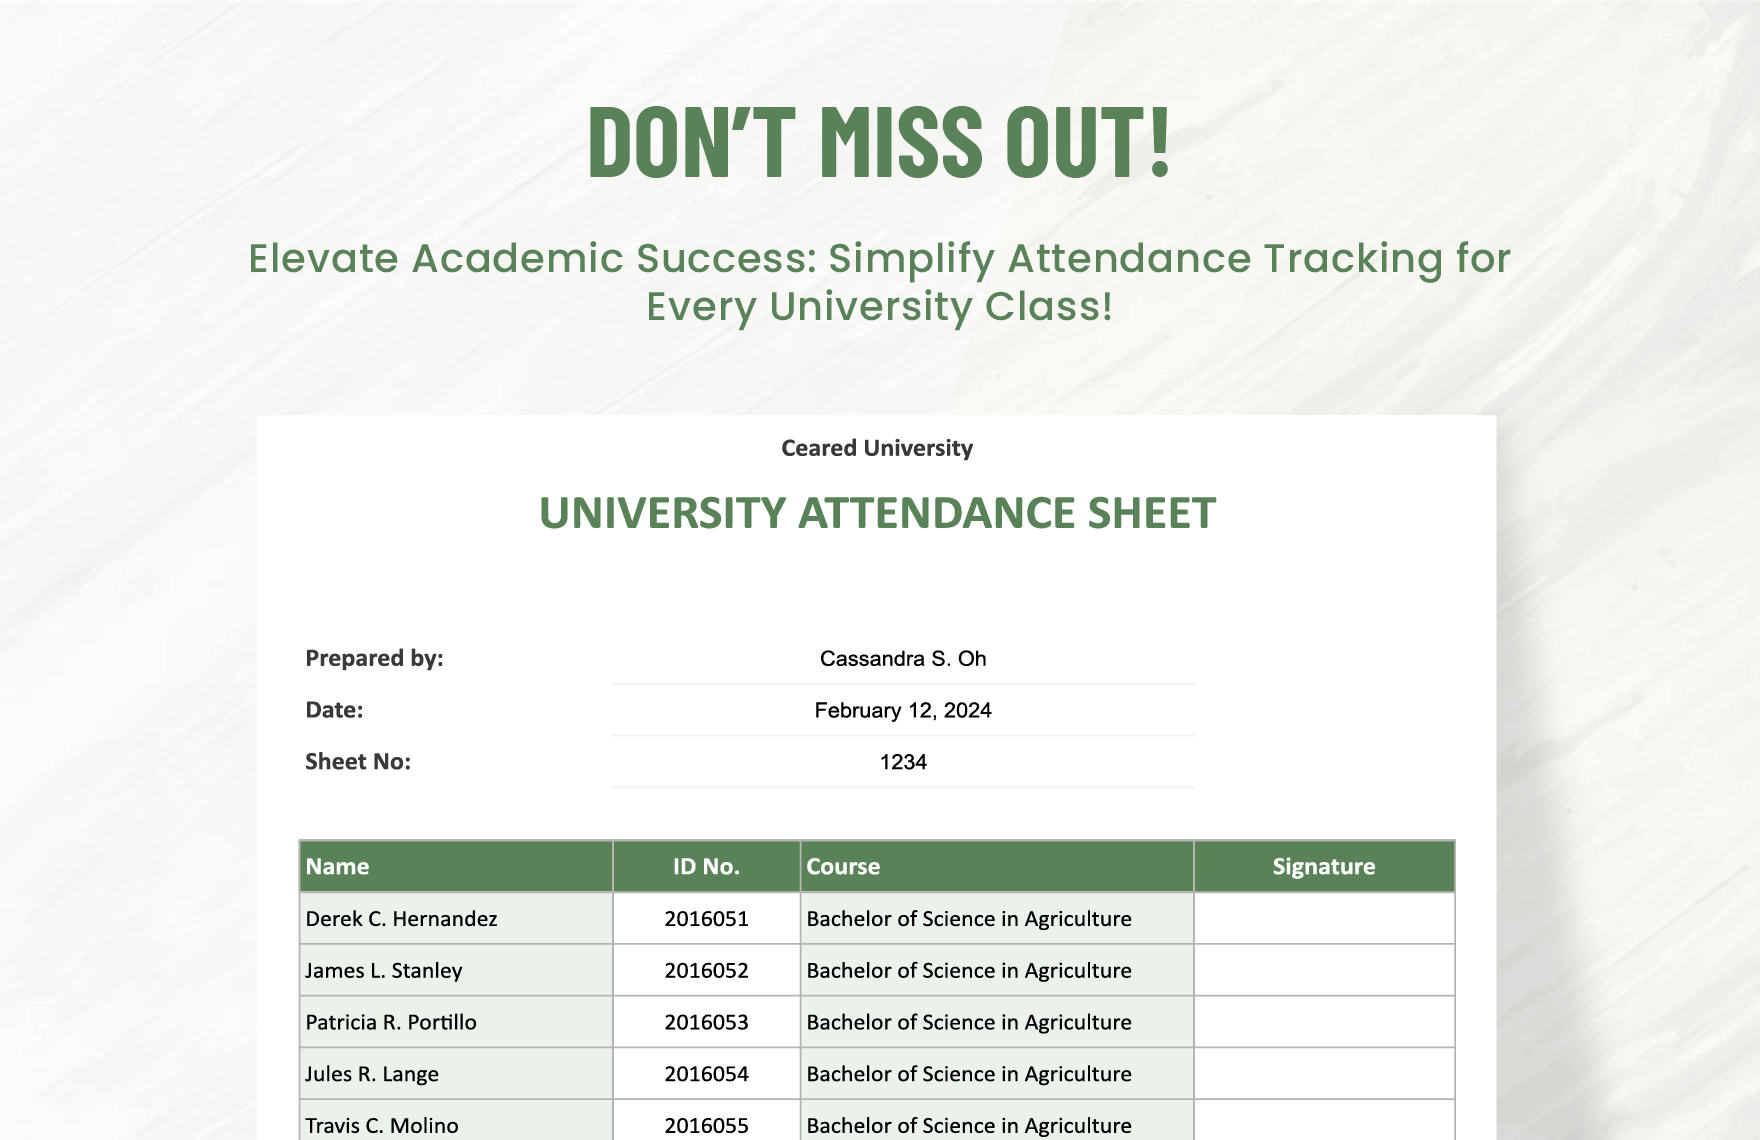 University Attendance Sheet Template